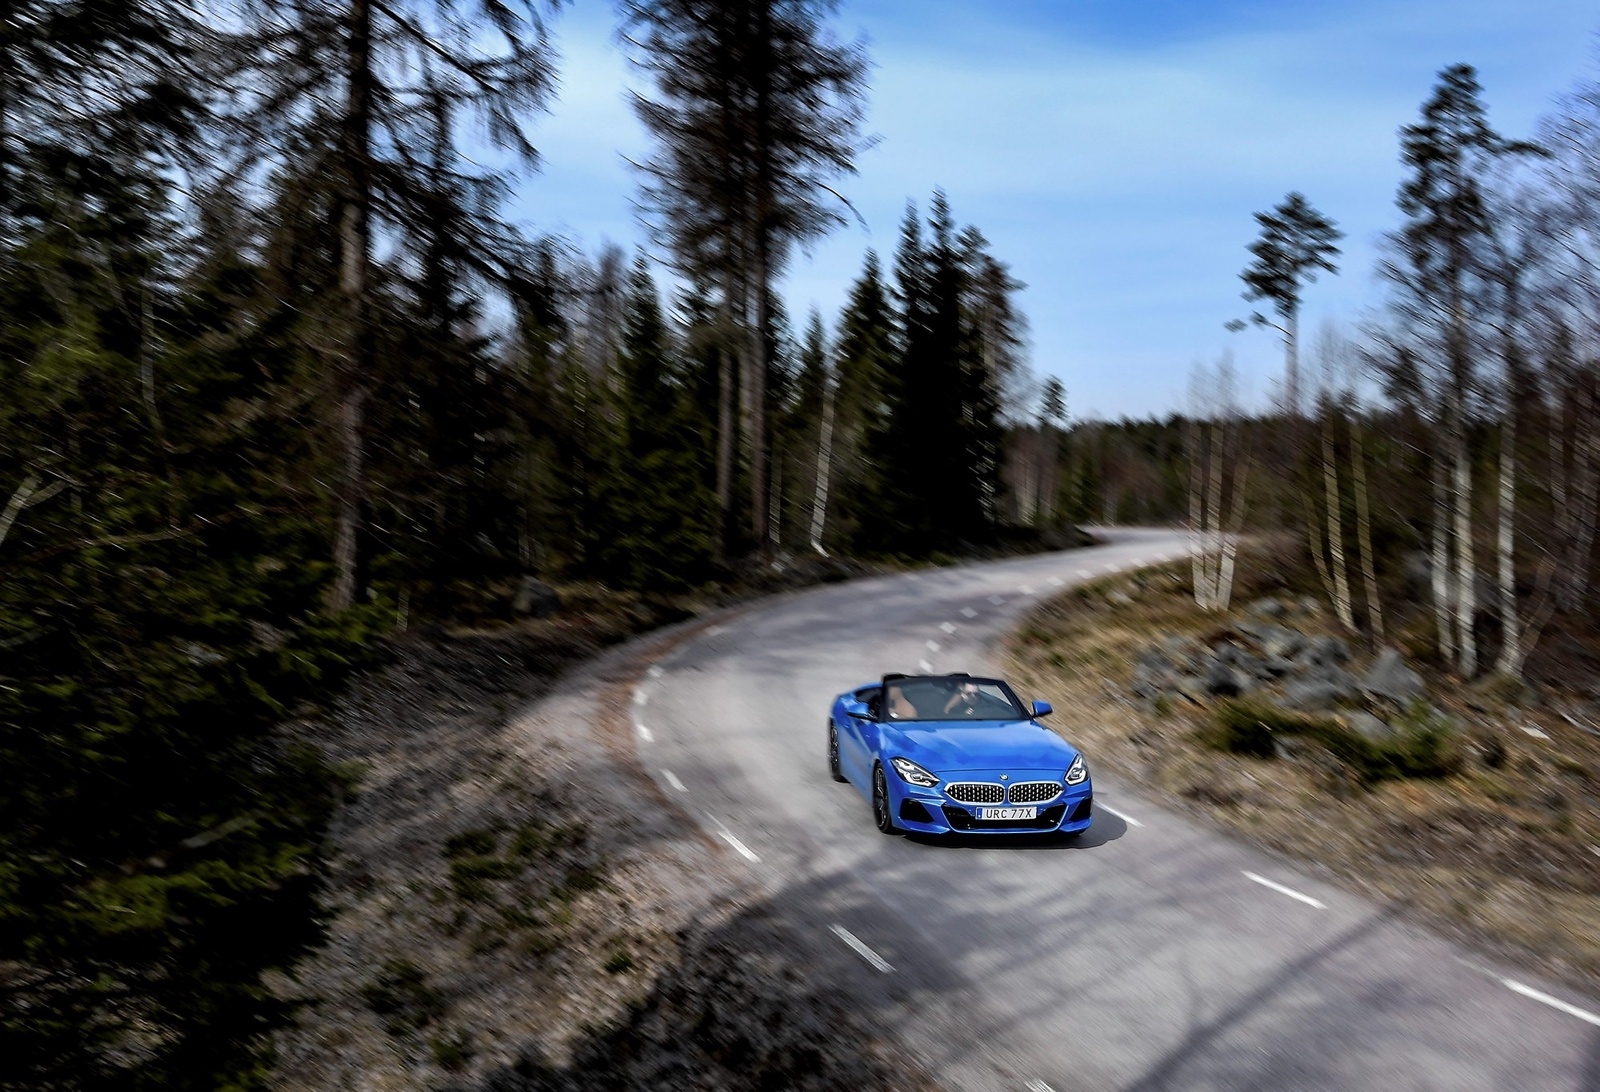 BMW:s nya roadster har utvecklats tillsammans med Toyota, vars nya sportbil Supra delar teknik med den starkaste versionen av Z4 och även tillverkas i samma tyska fabrik.
Foto: Pontus Lundahl/TT